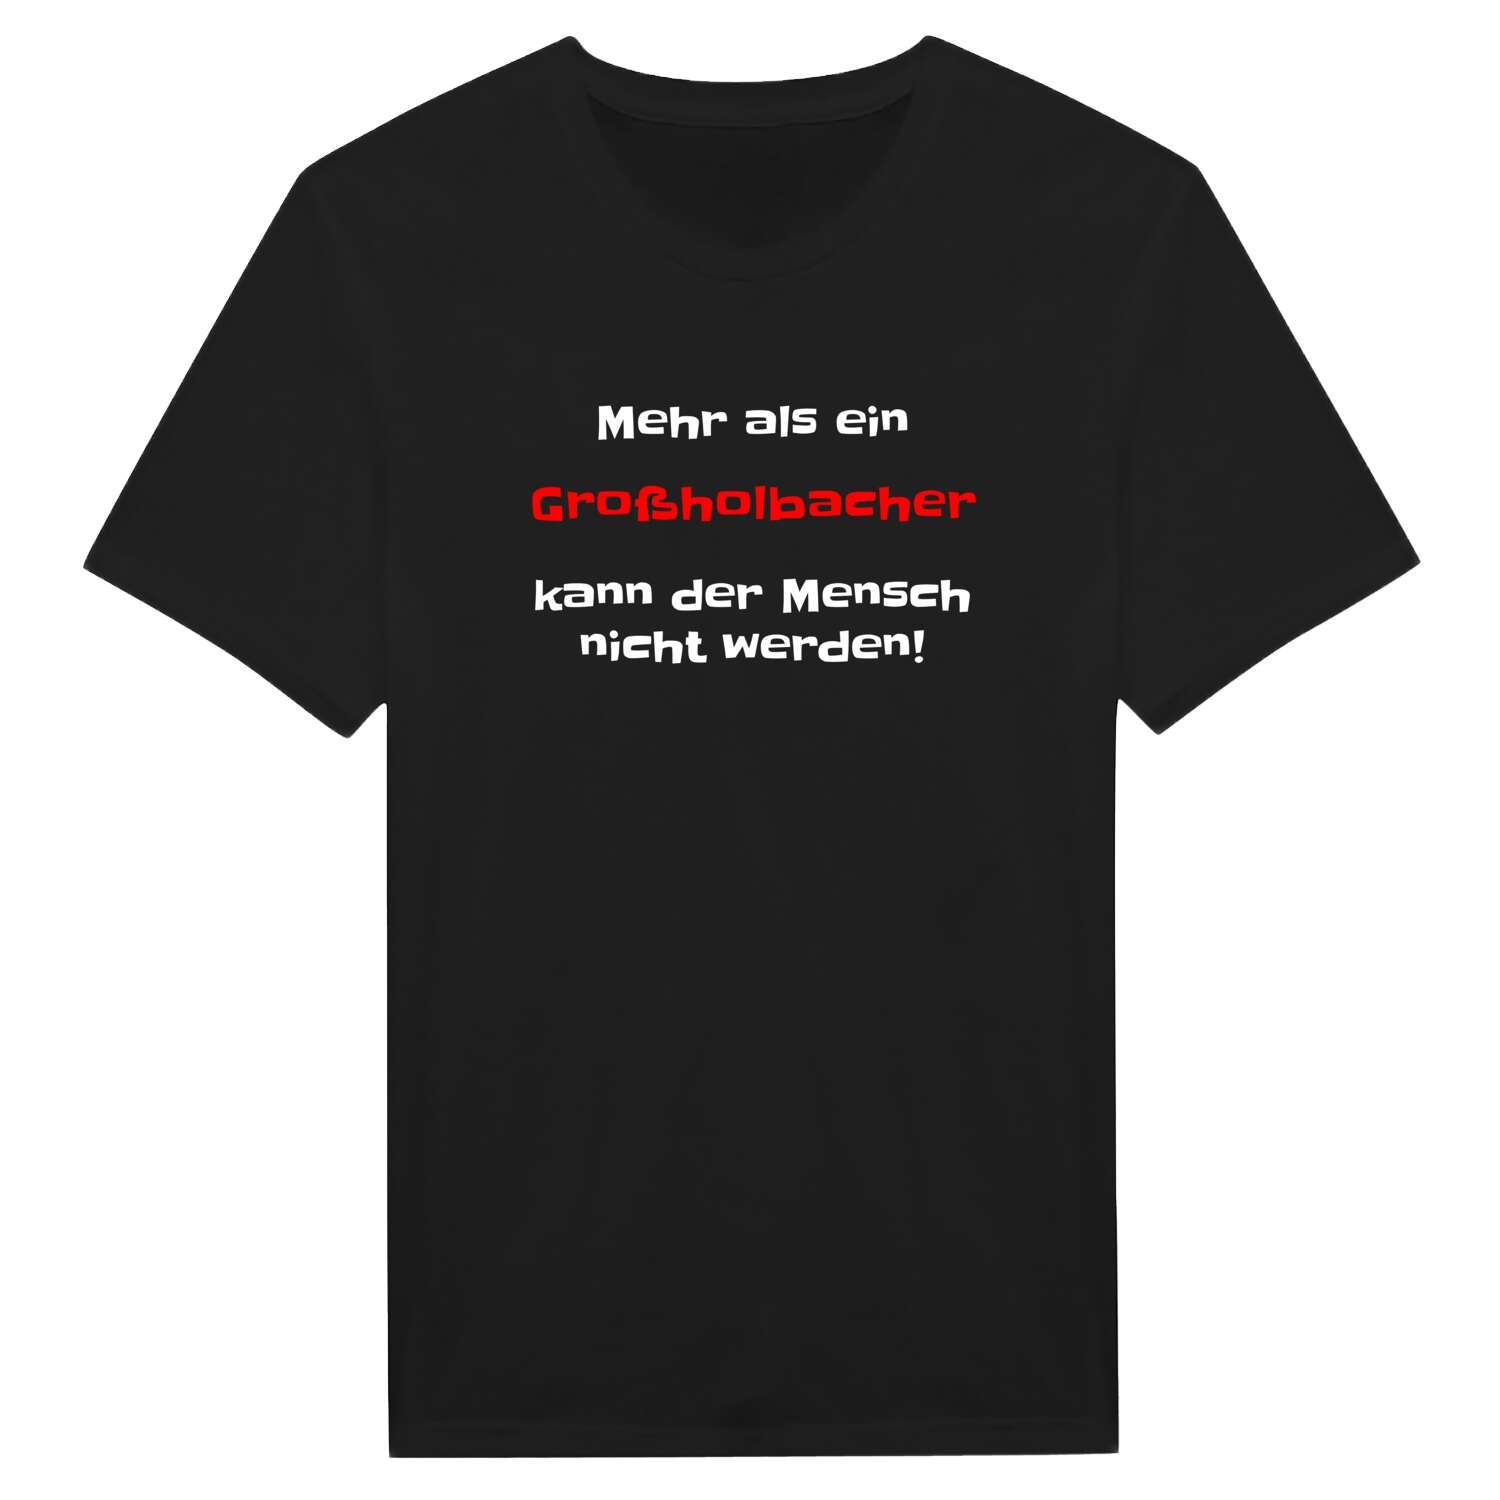 Großholbach T-Shirt »Mehr als ein«